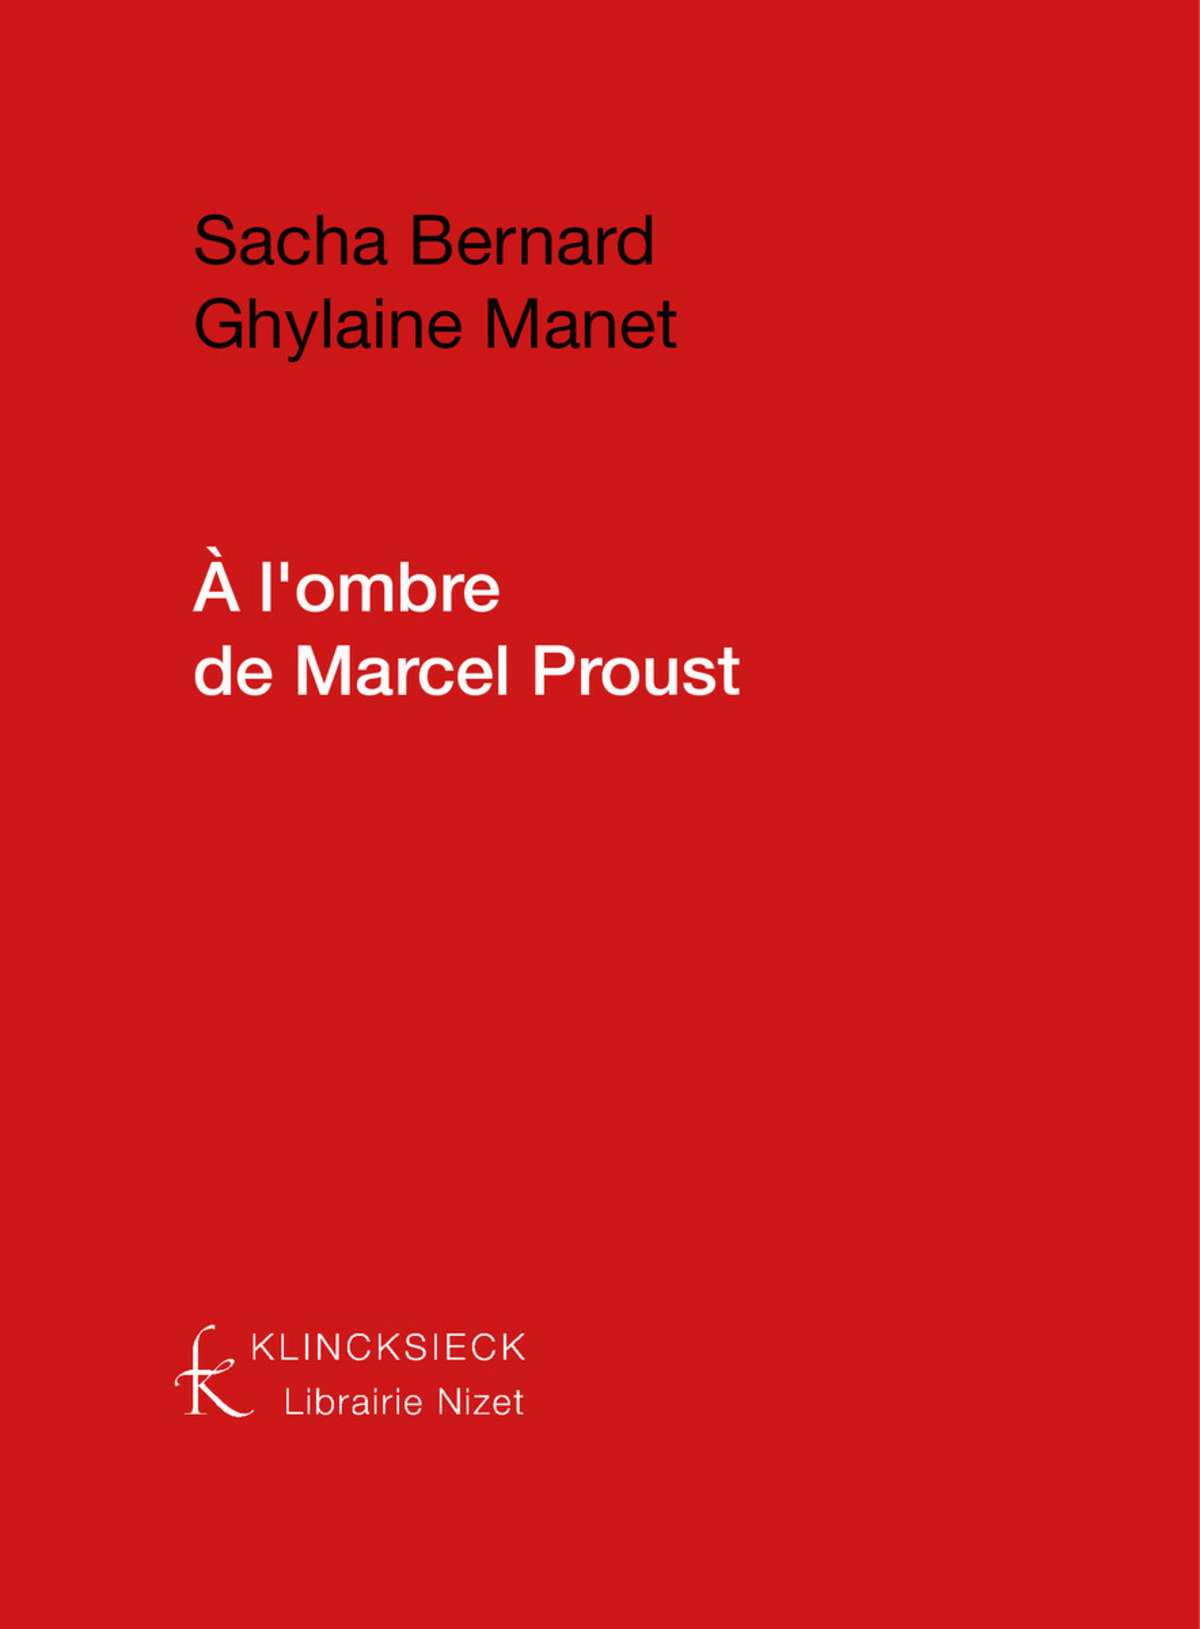 A l'ombre de Marcel Proust